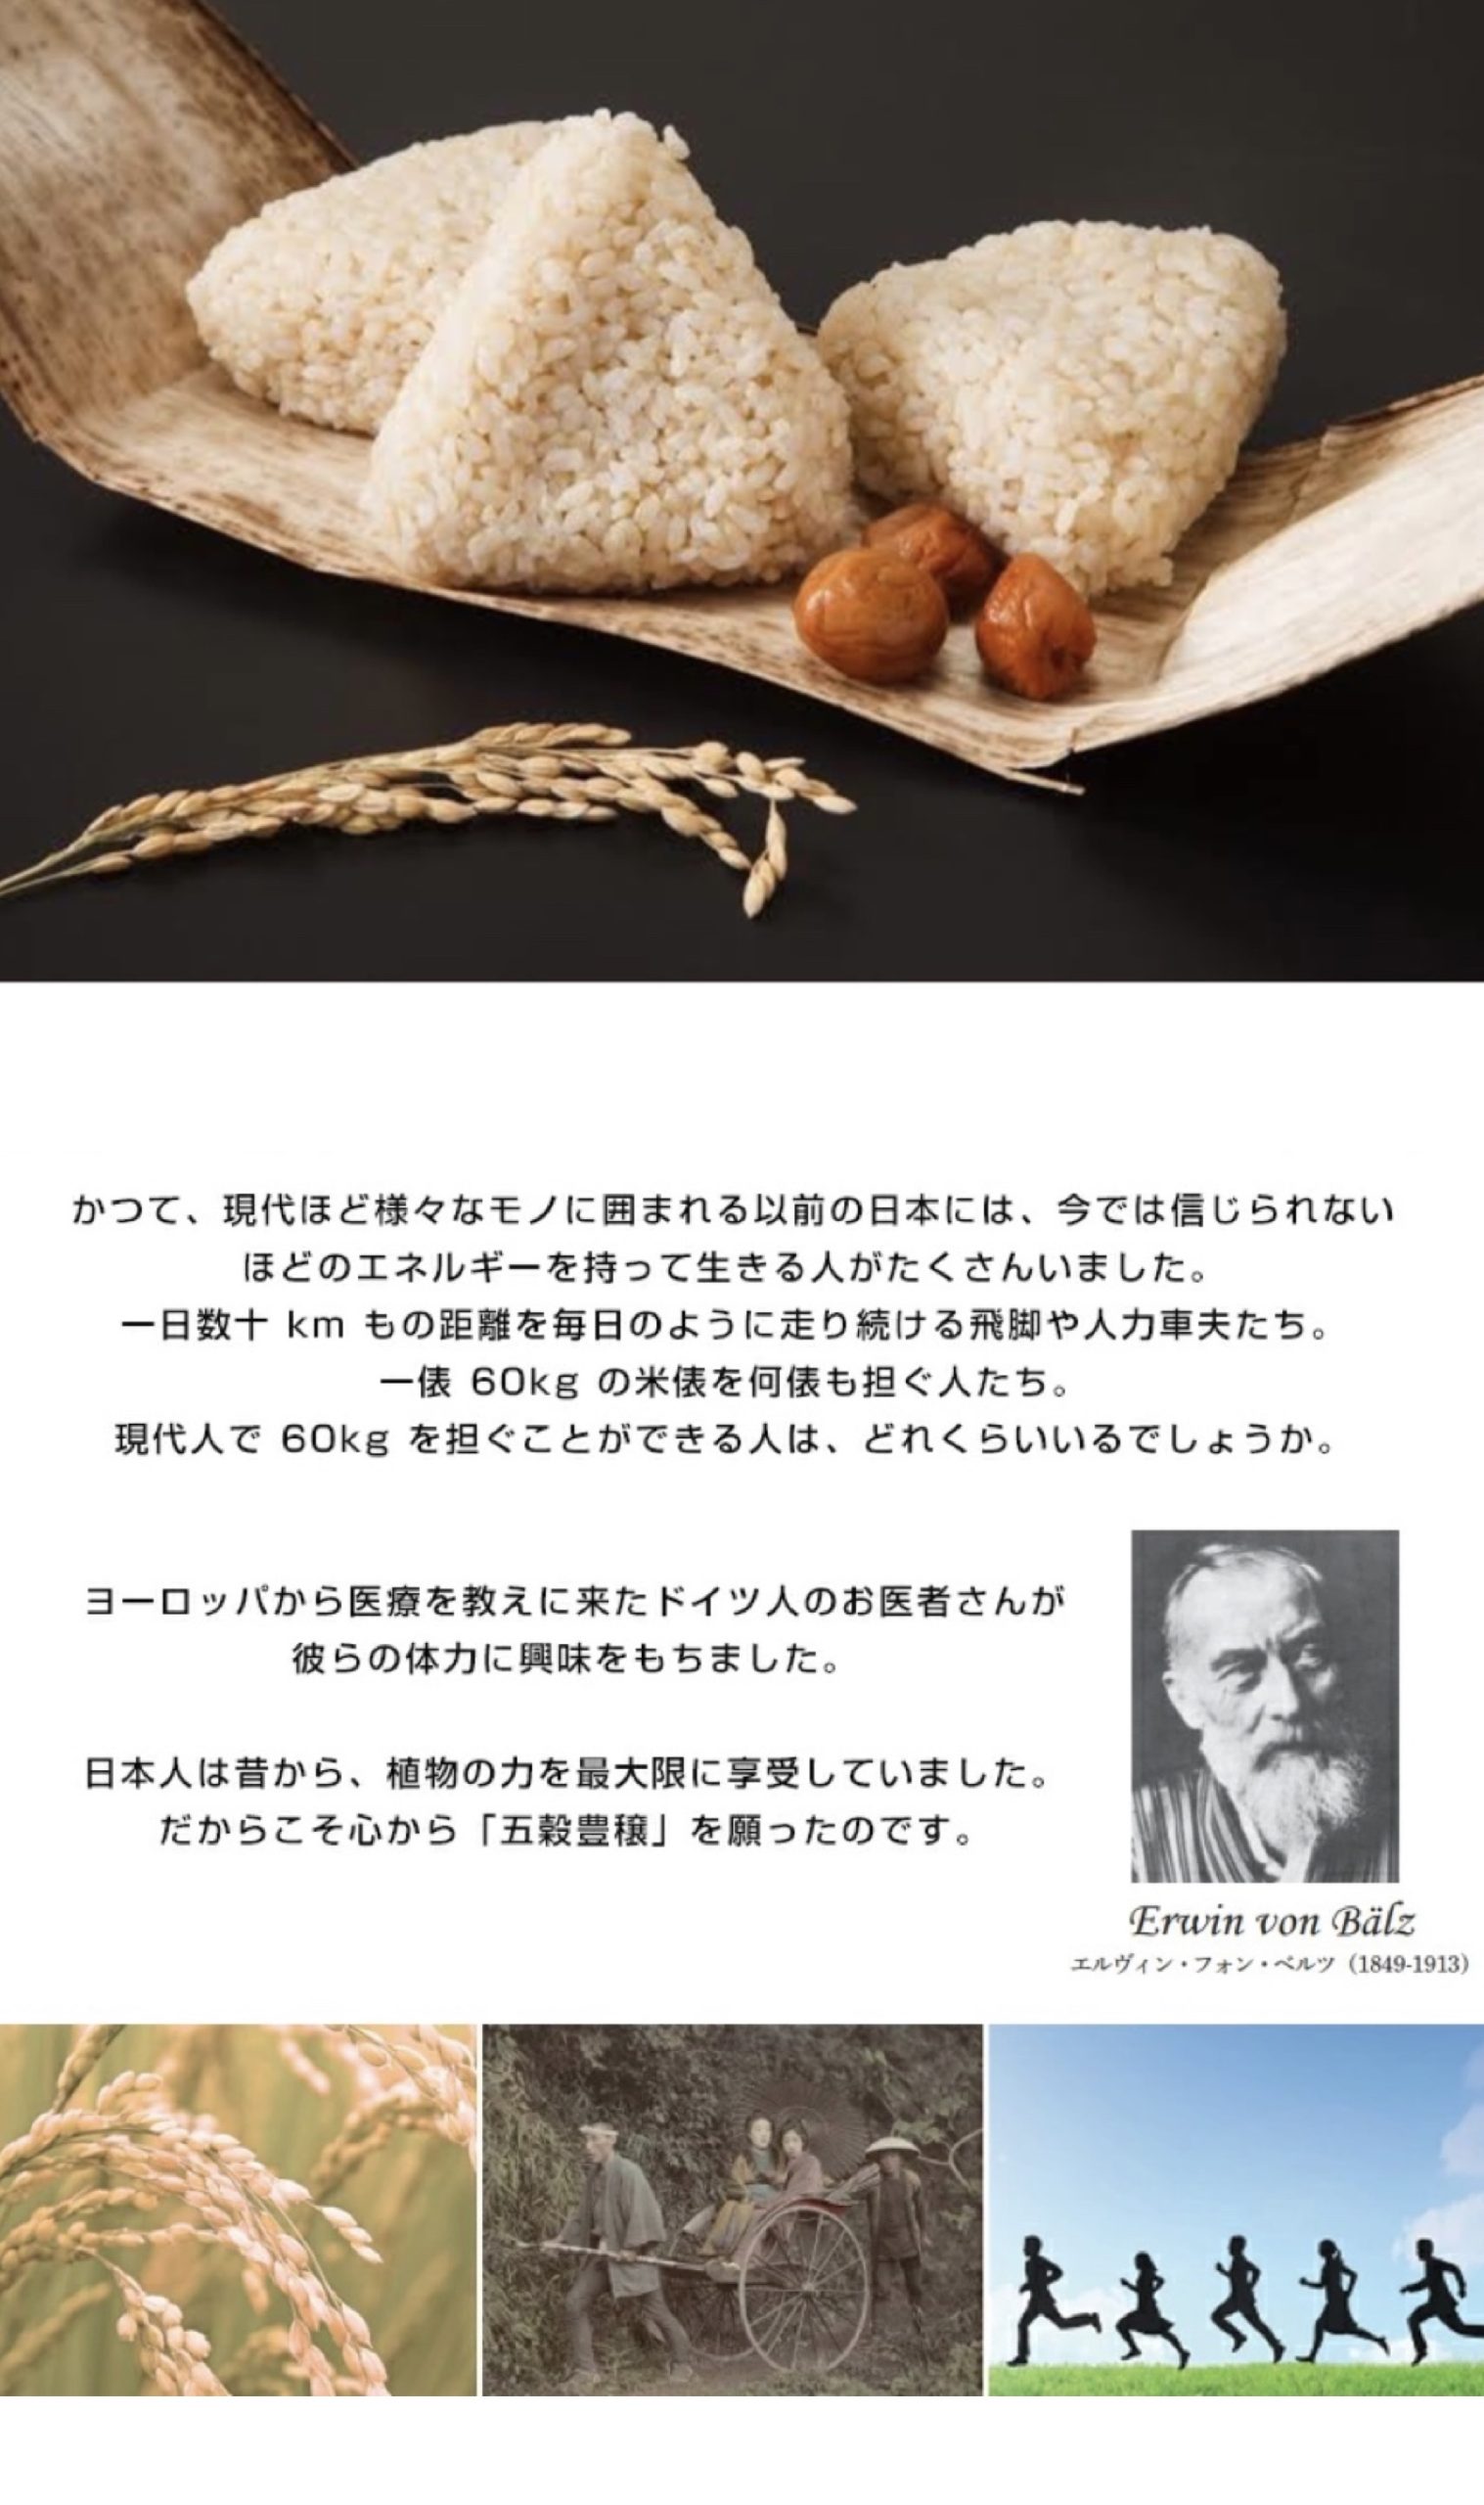 「人類が到達した、最高の食事が存在する。それは、日本の伝統食である」